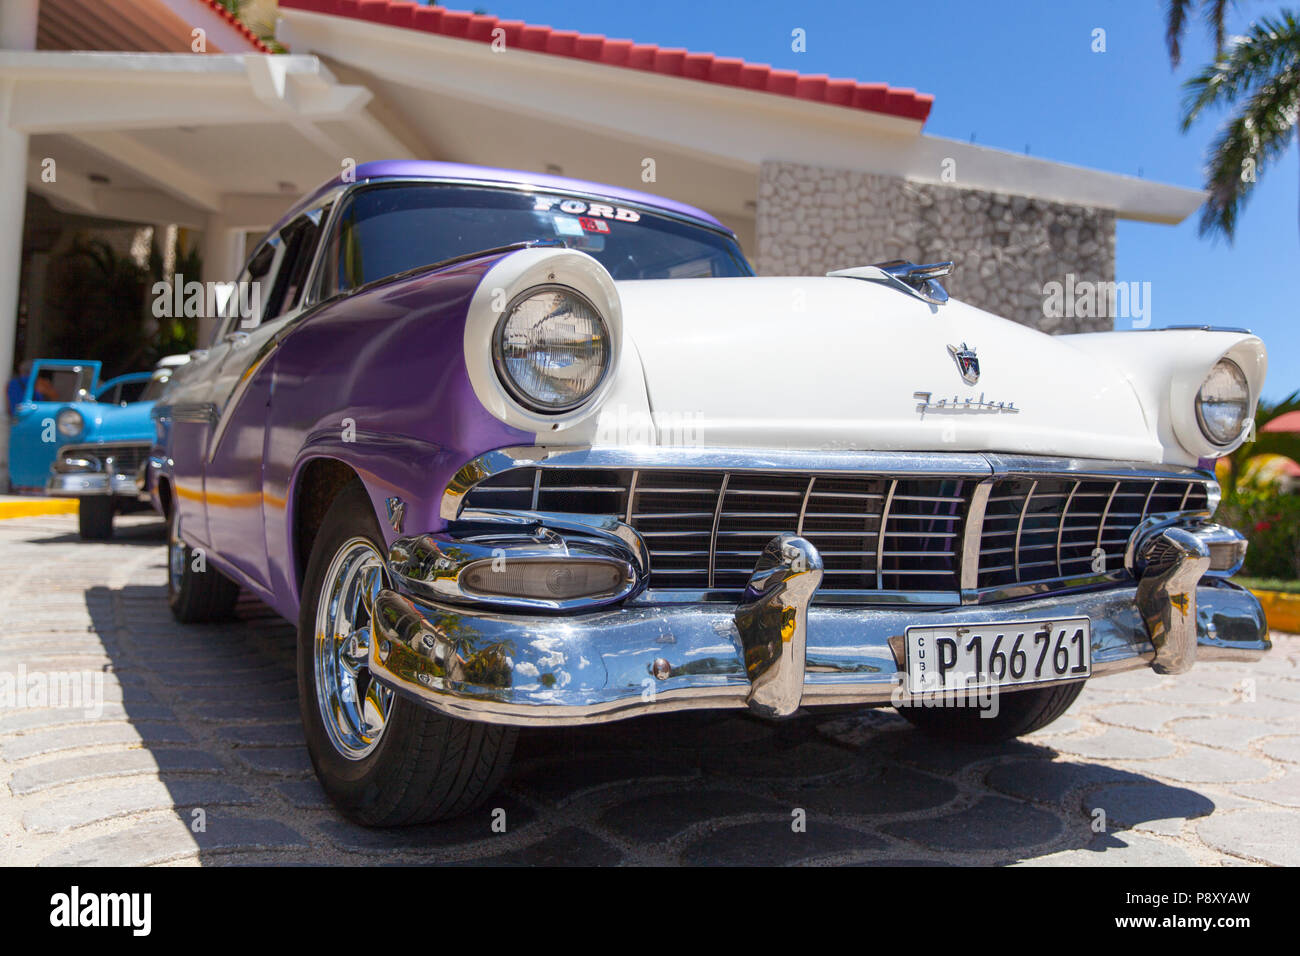 Classic Cuban Cars - Cuba Stock Photo